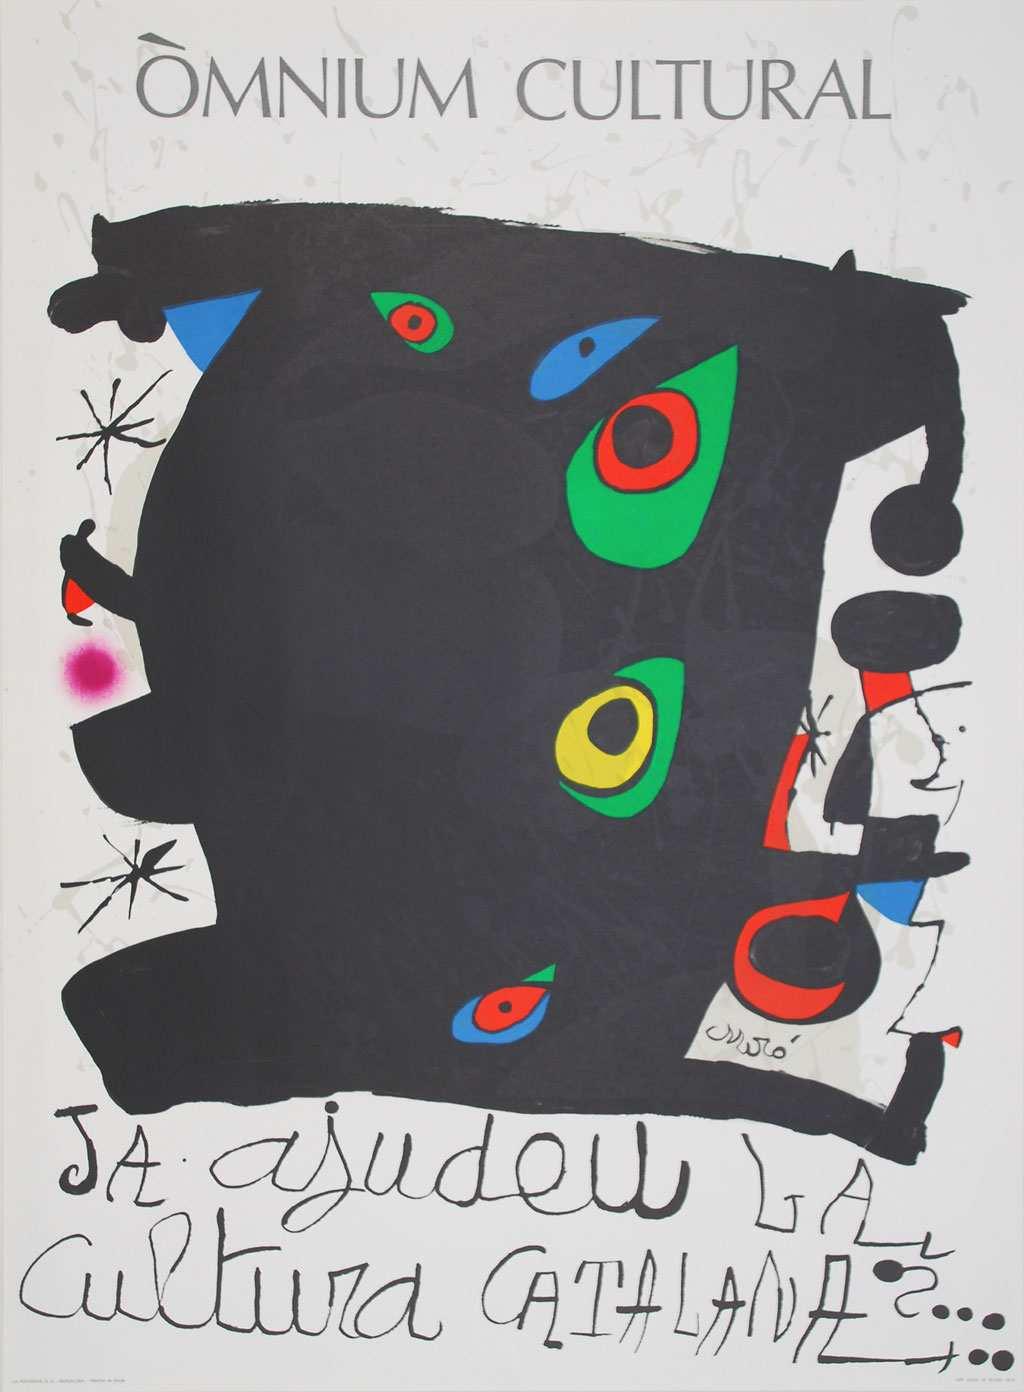 Seite: 4 von 10 9 10424 Joan Miro 1974 73 x 54 x 0,5 / 73 x 54 39,00 250,00 Joan Miró - Omnium cultural - Ausstellung- Farblithografie 1974 Joan Miró